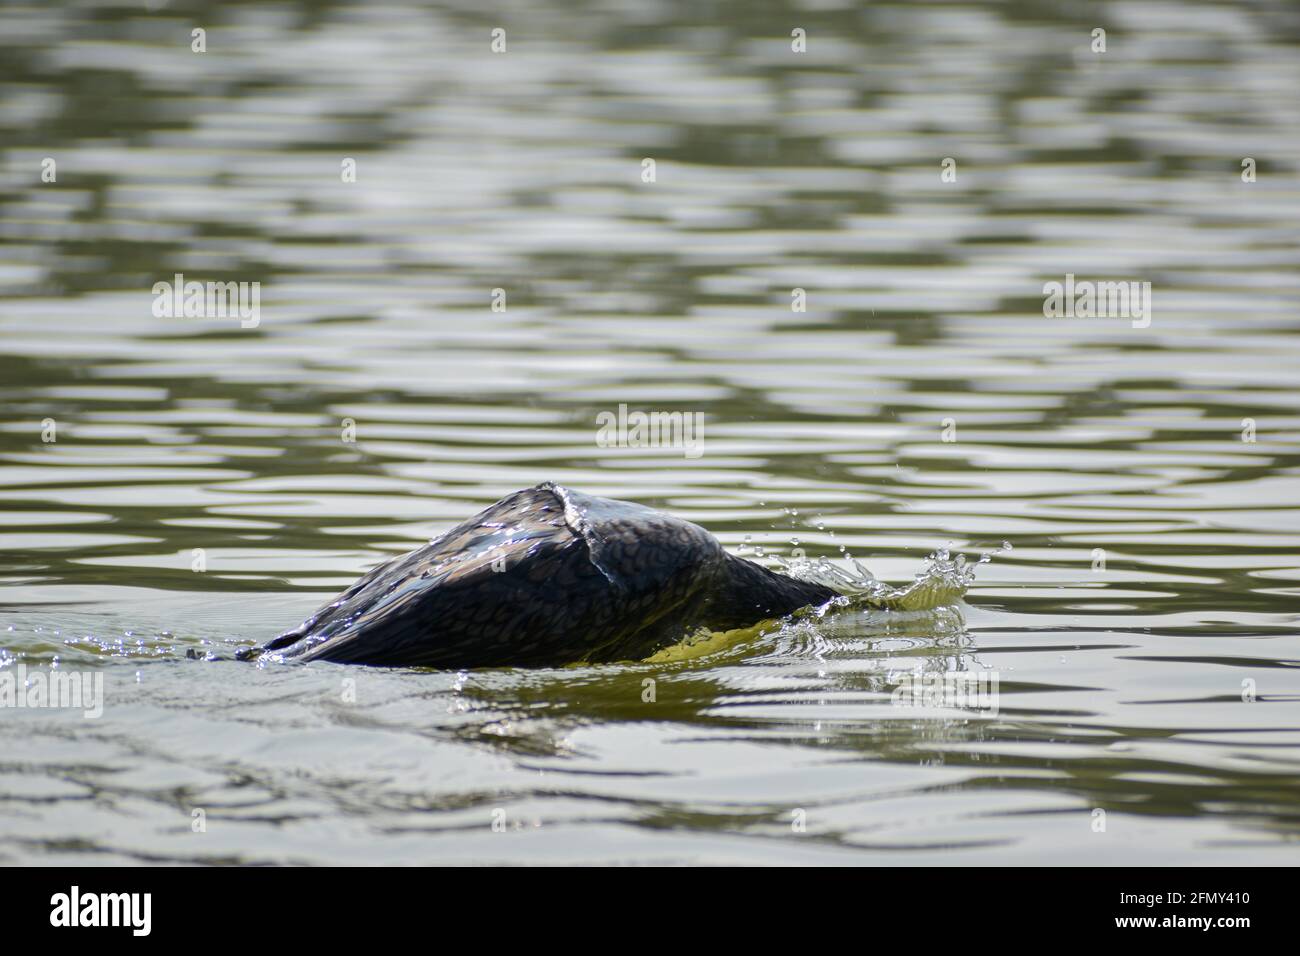 Wasservögel Indiens, die im See schwimmen, Vögel auf großer Menge an Wasserkörper, indische Vögel in einem See Stockfoto